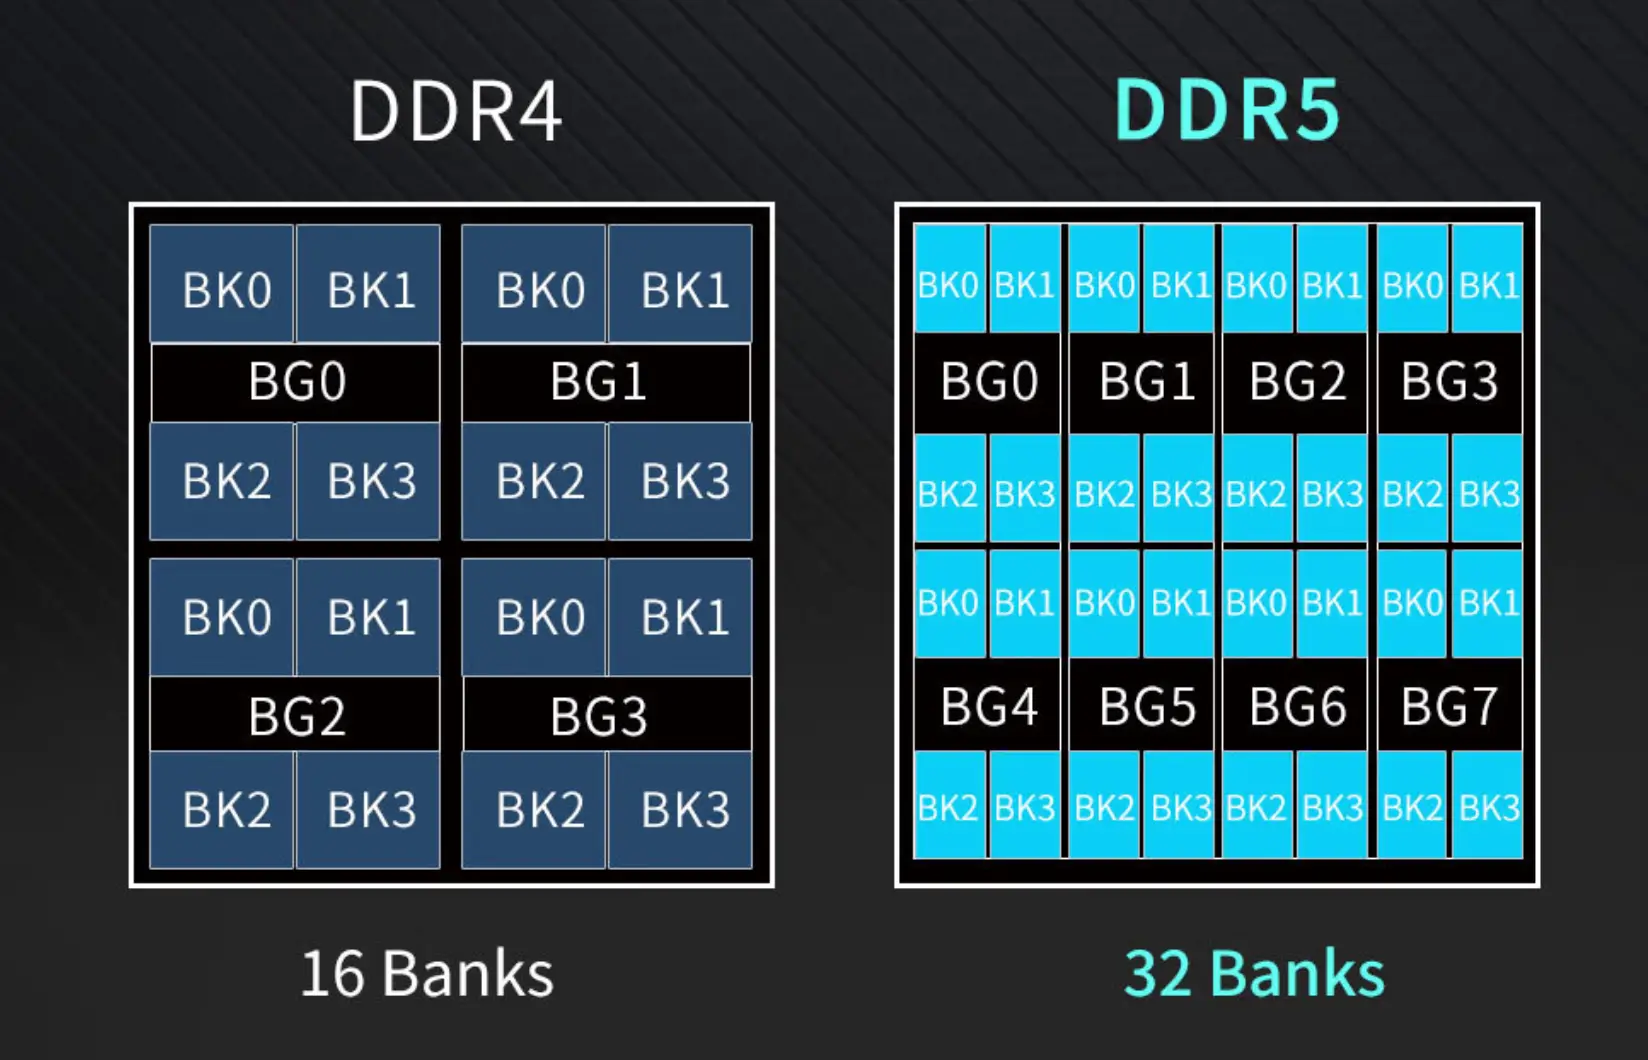 DDR5：新一代内存技术的巨大跨越与性能飞跃  第1张